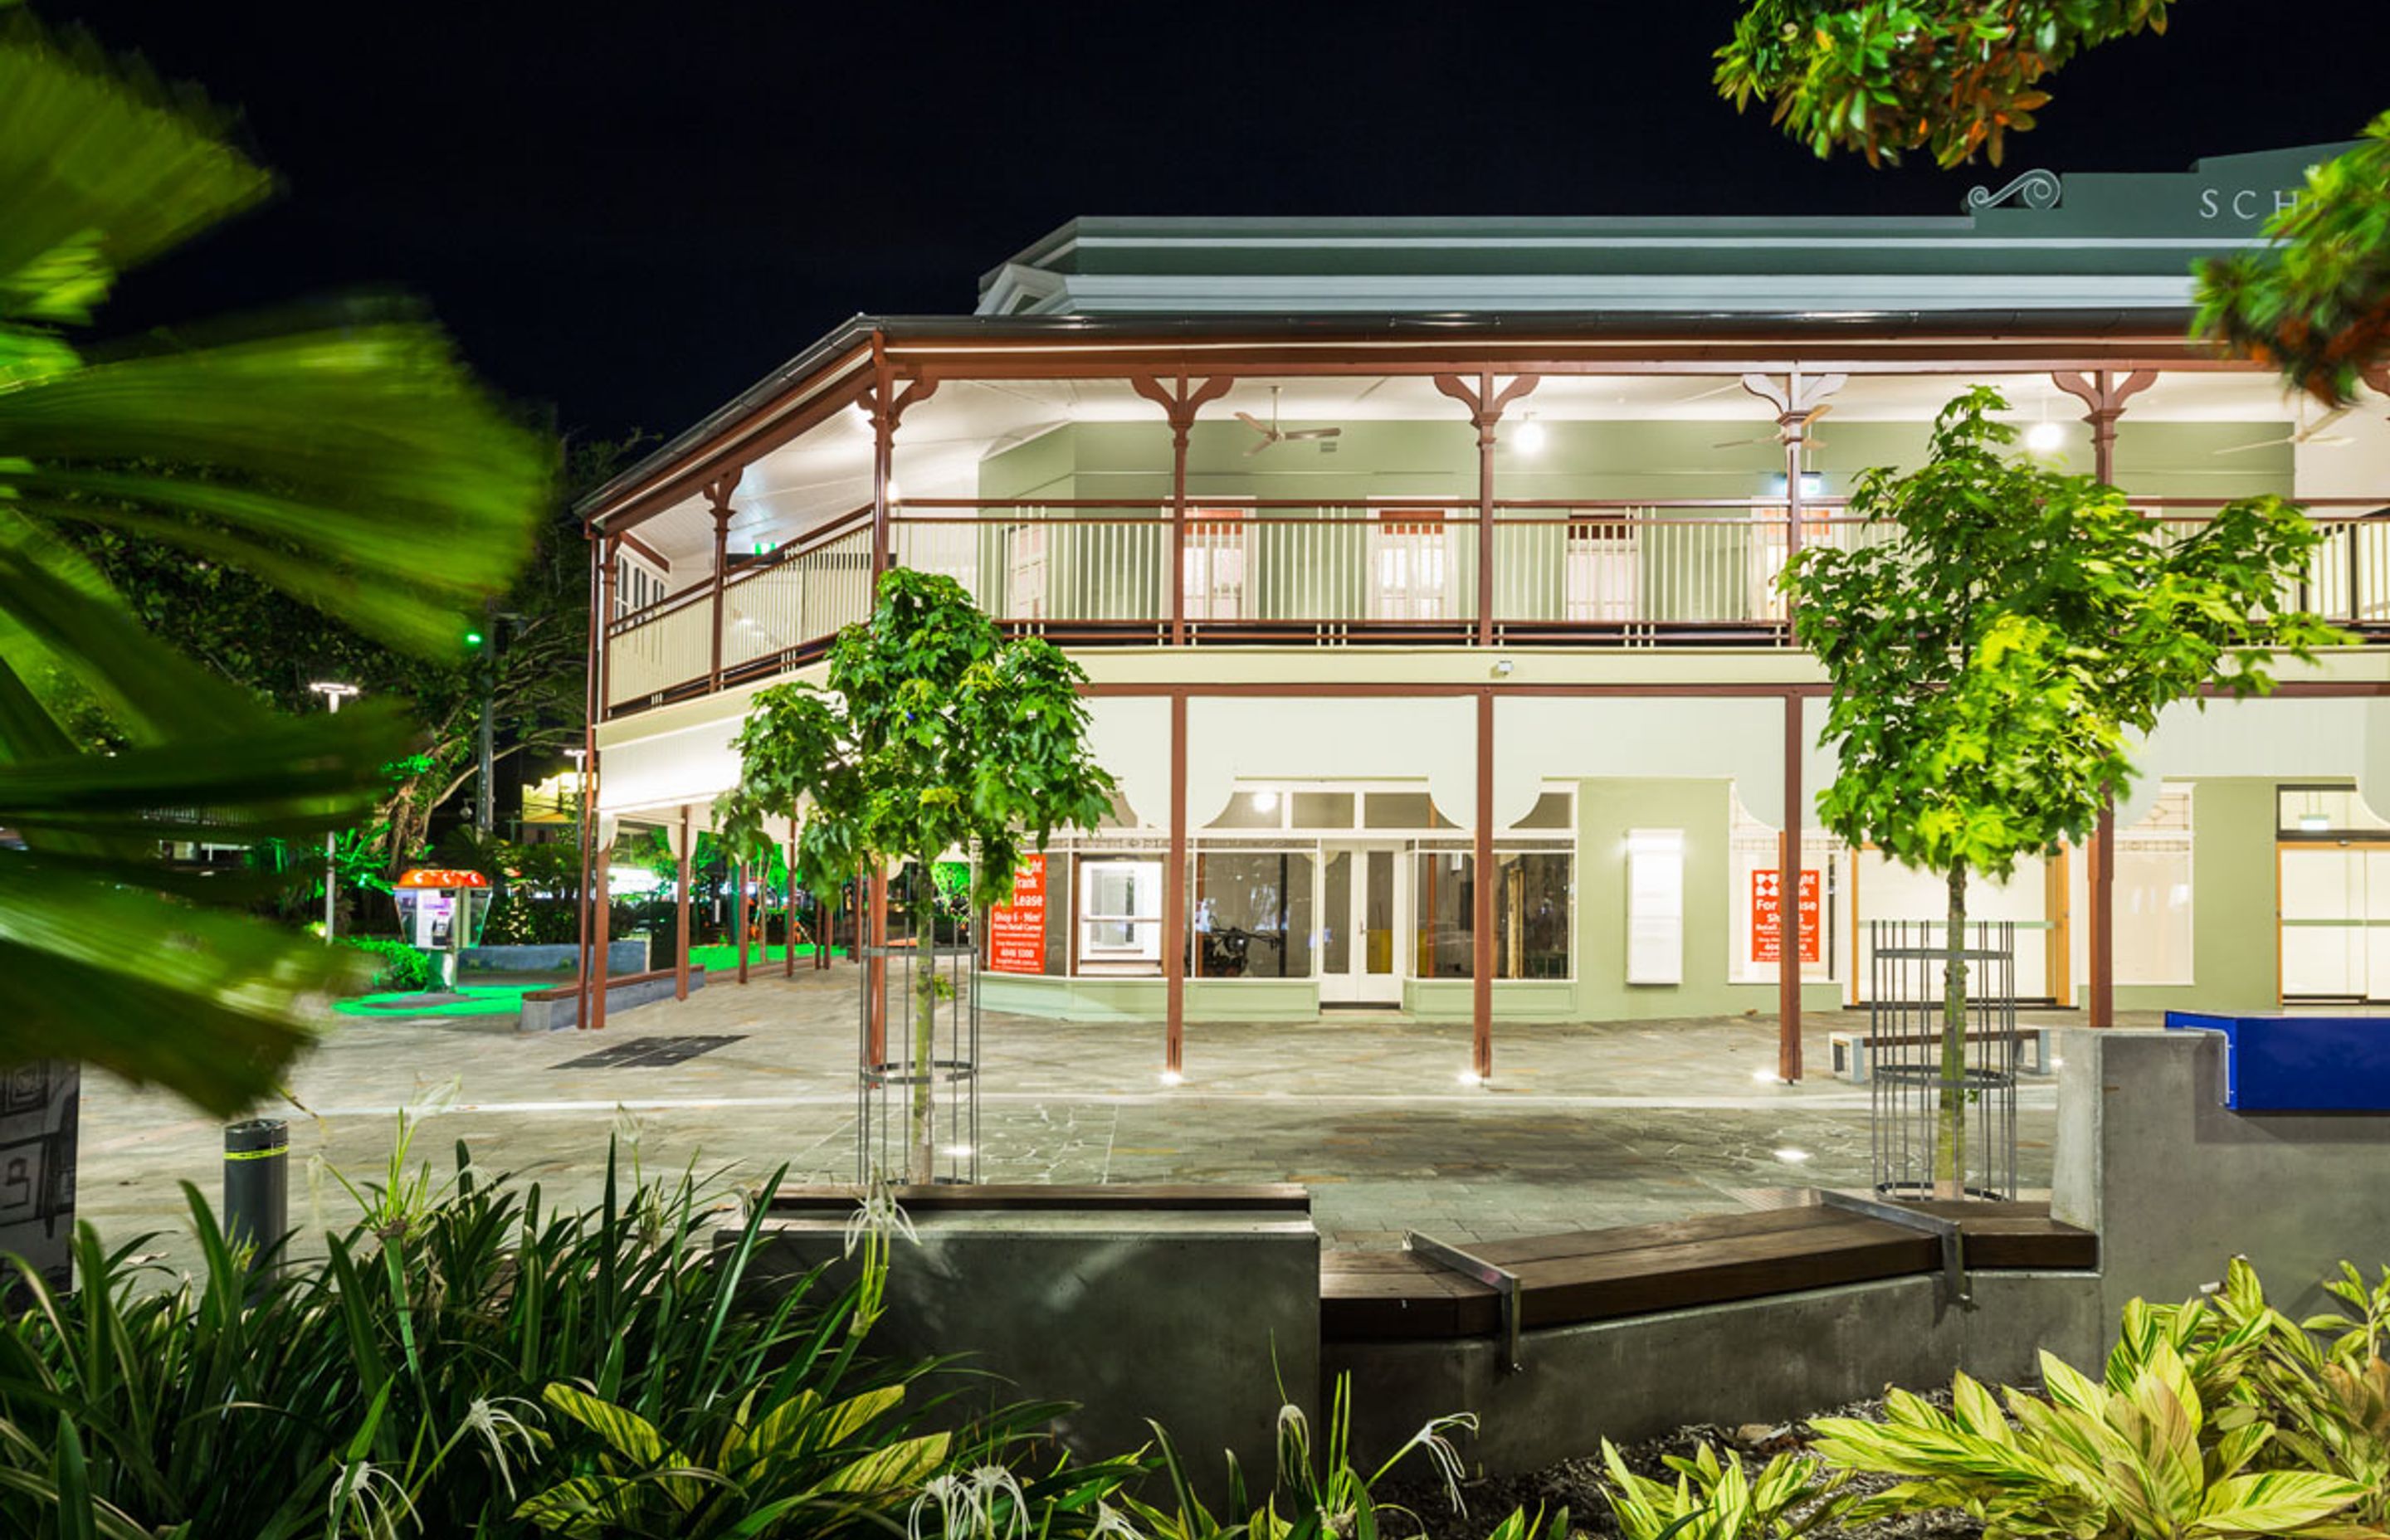 Cairns Museum School of Arts